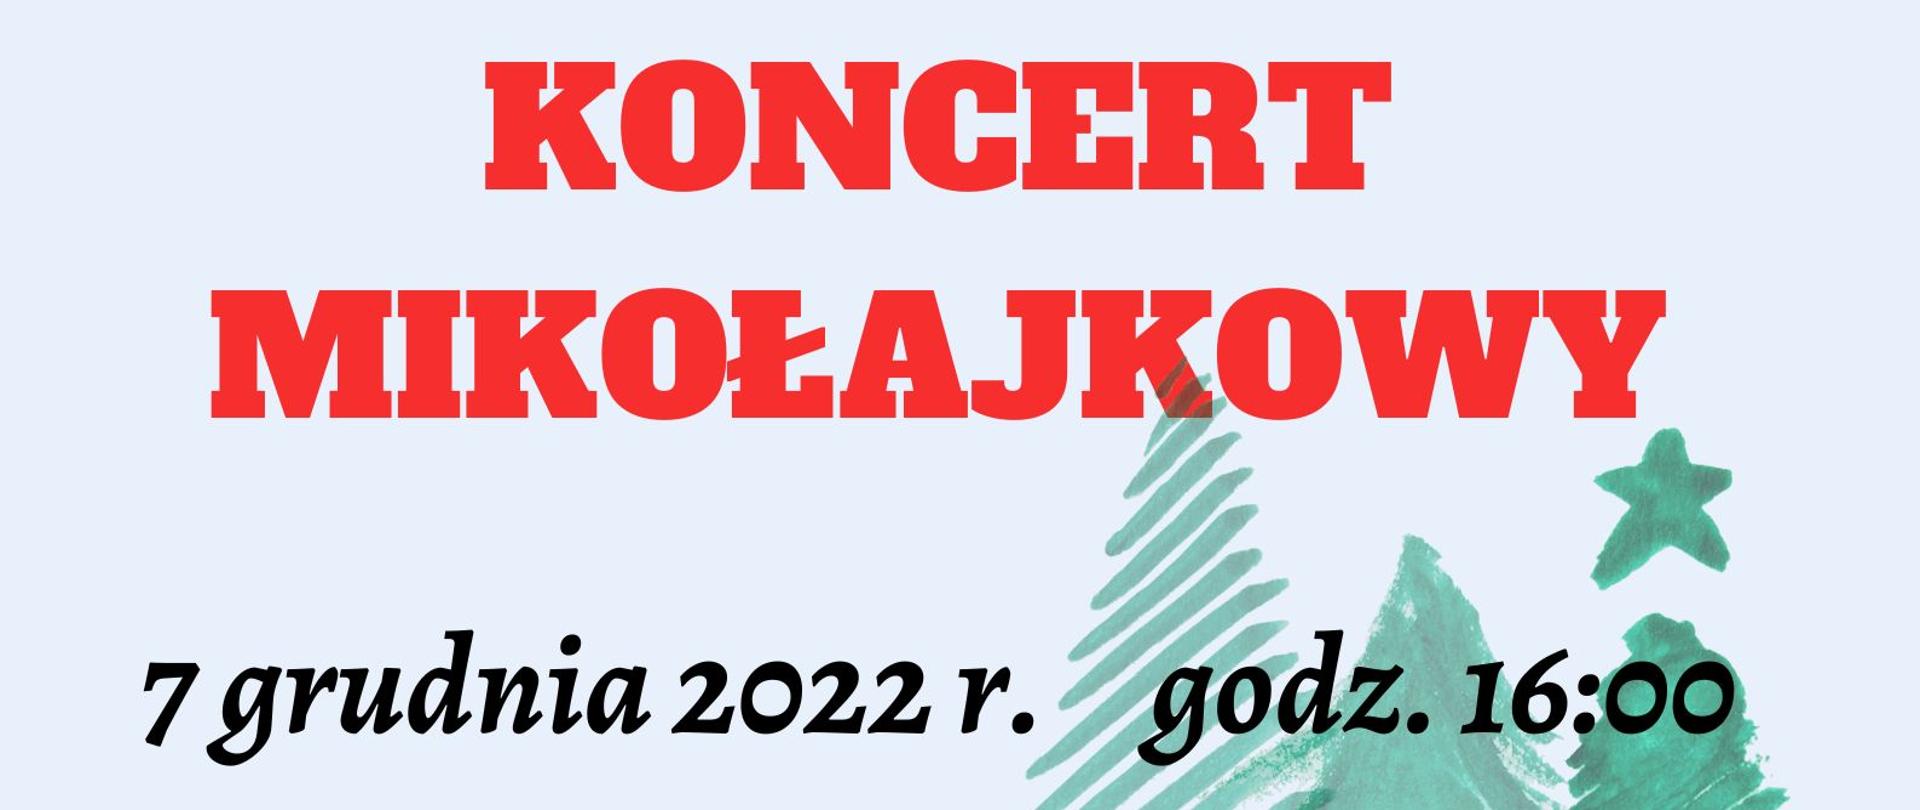 Plakat z wydarzeniem - Koncert Mikołajkowy, który odbędzie się w dniu 7 grudnia 2022r. o godz. 16:00 w auli ZPSM w Dębicy; na plakacie w tle znajdują się choinki, domek oraz postać Św. Mikołaja z prezentami.